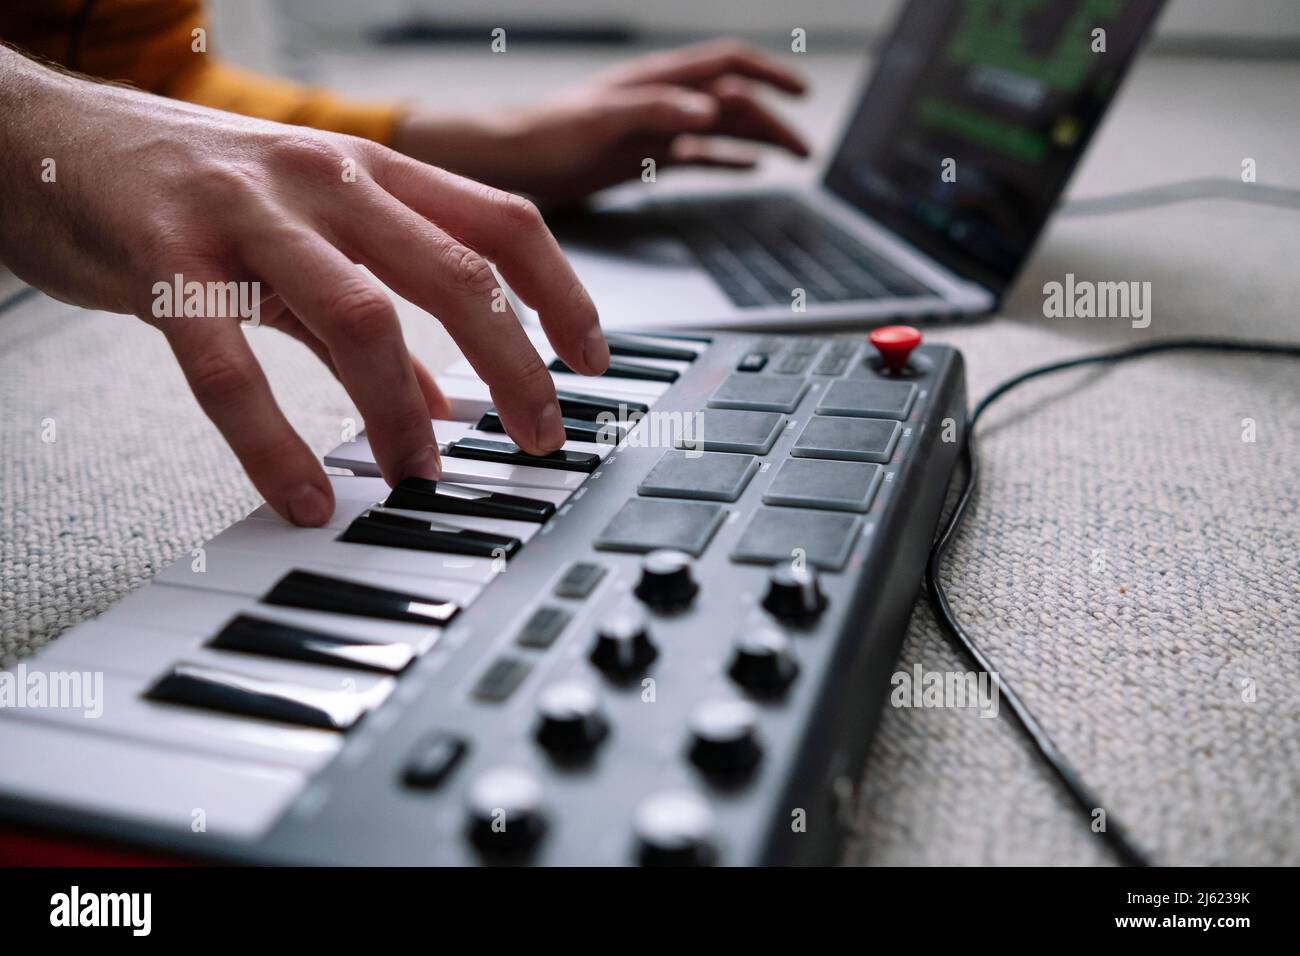 Mains de freelance utilisant un ordinateur portable et piano dans studio à la maison Banque D'Images